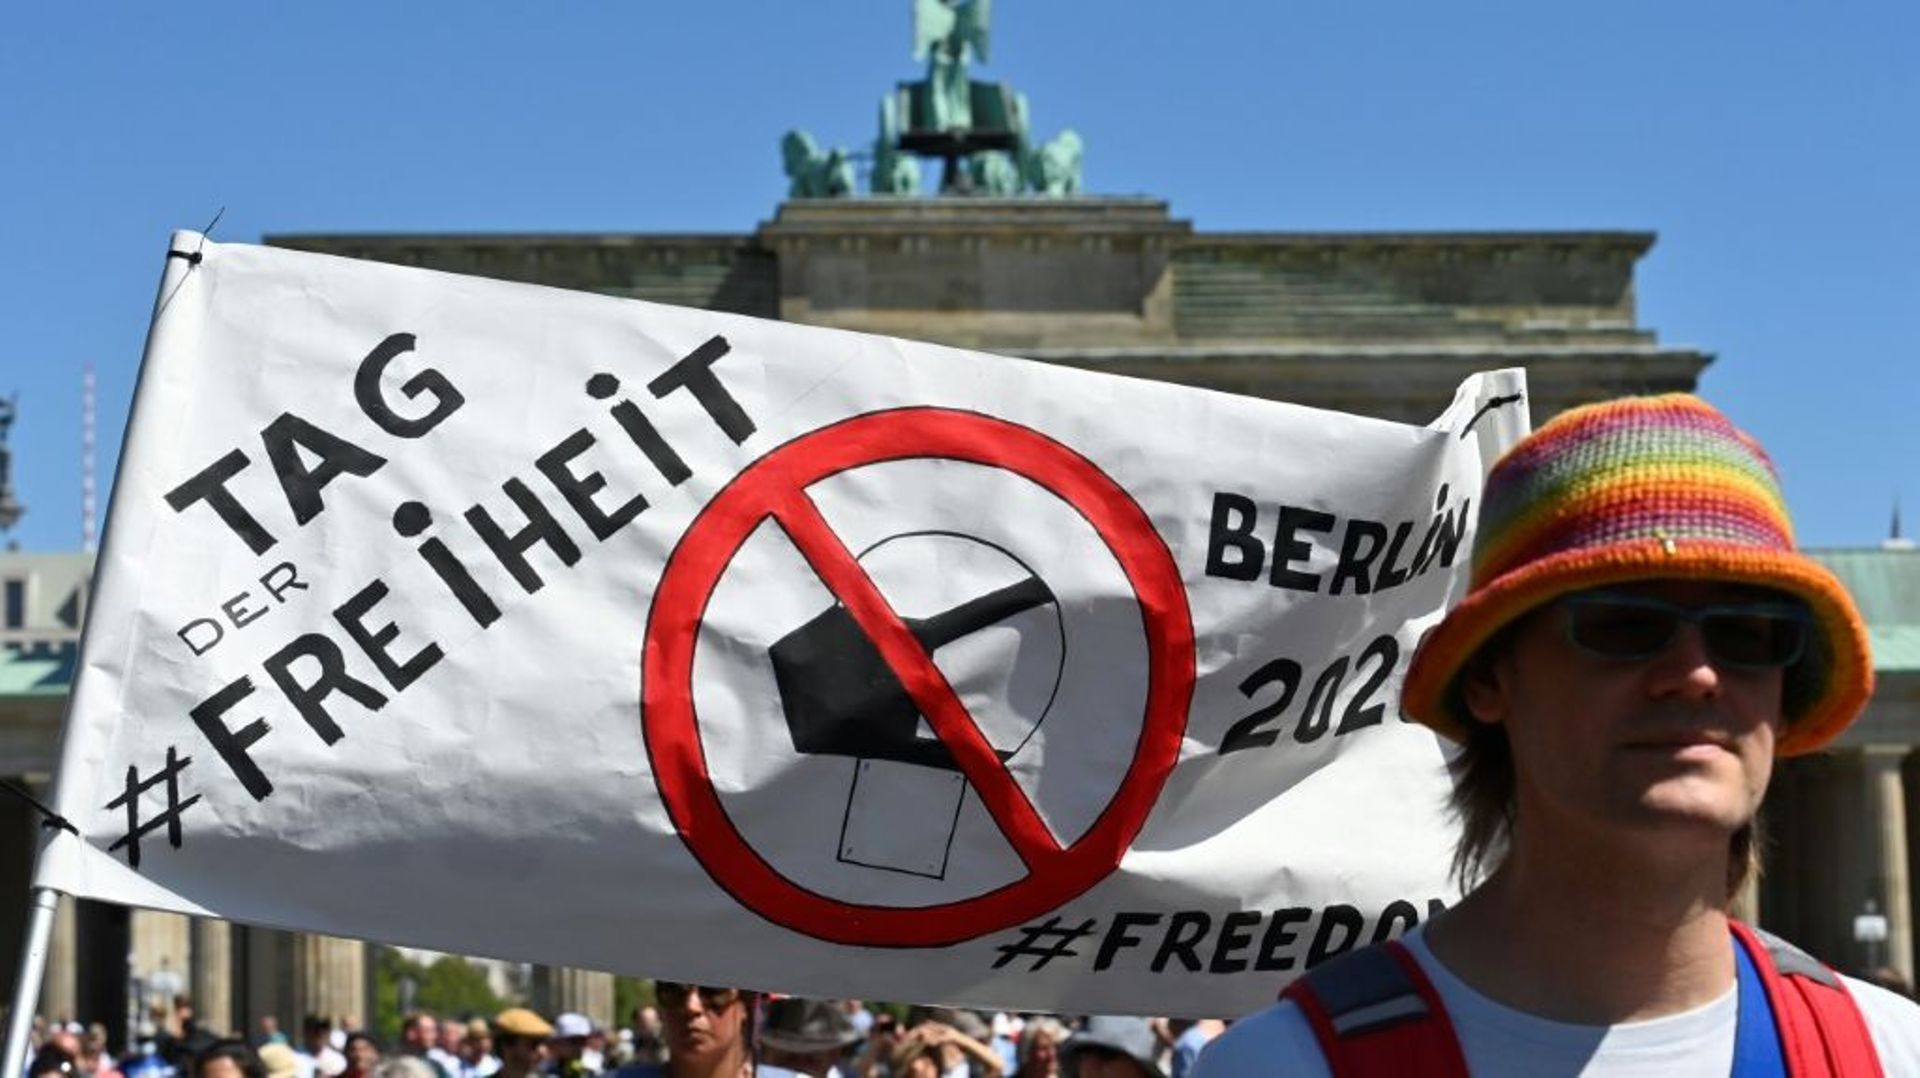 Des manifestants brandissent la bannière "Jour de la liberté lors d'un défilé anti-masques organisé par Querdenken-711" le 1er août 2020 à Berlin